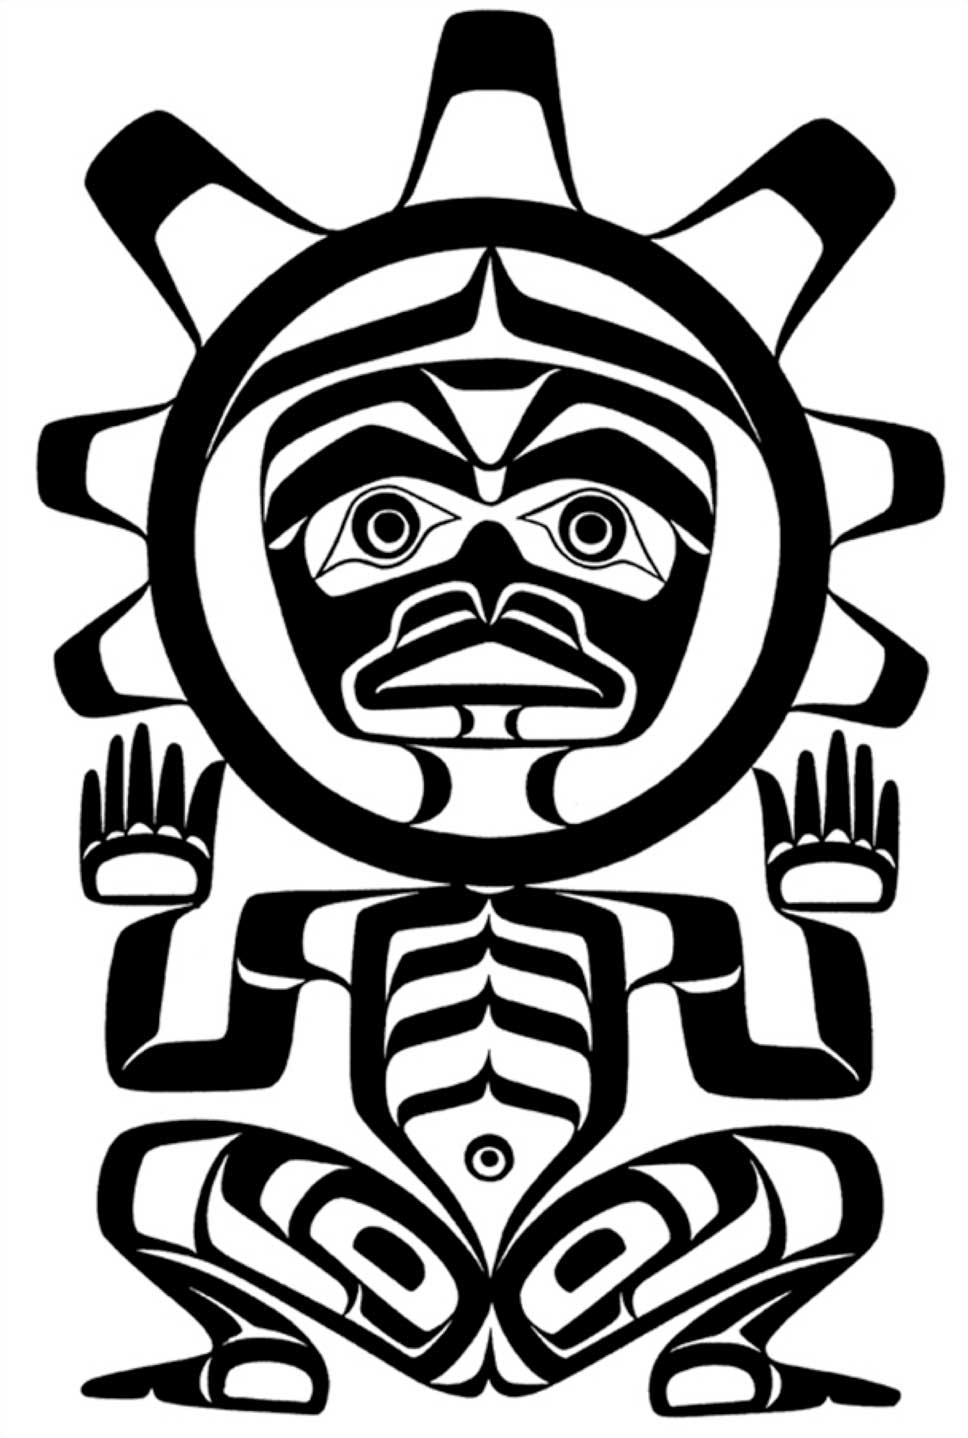 Dessin au trait noir montrant le logo de la Société culturelle U'mista, le soleil sous forme humaine